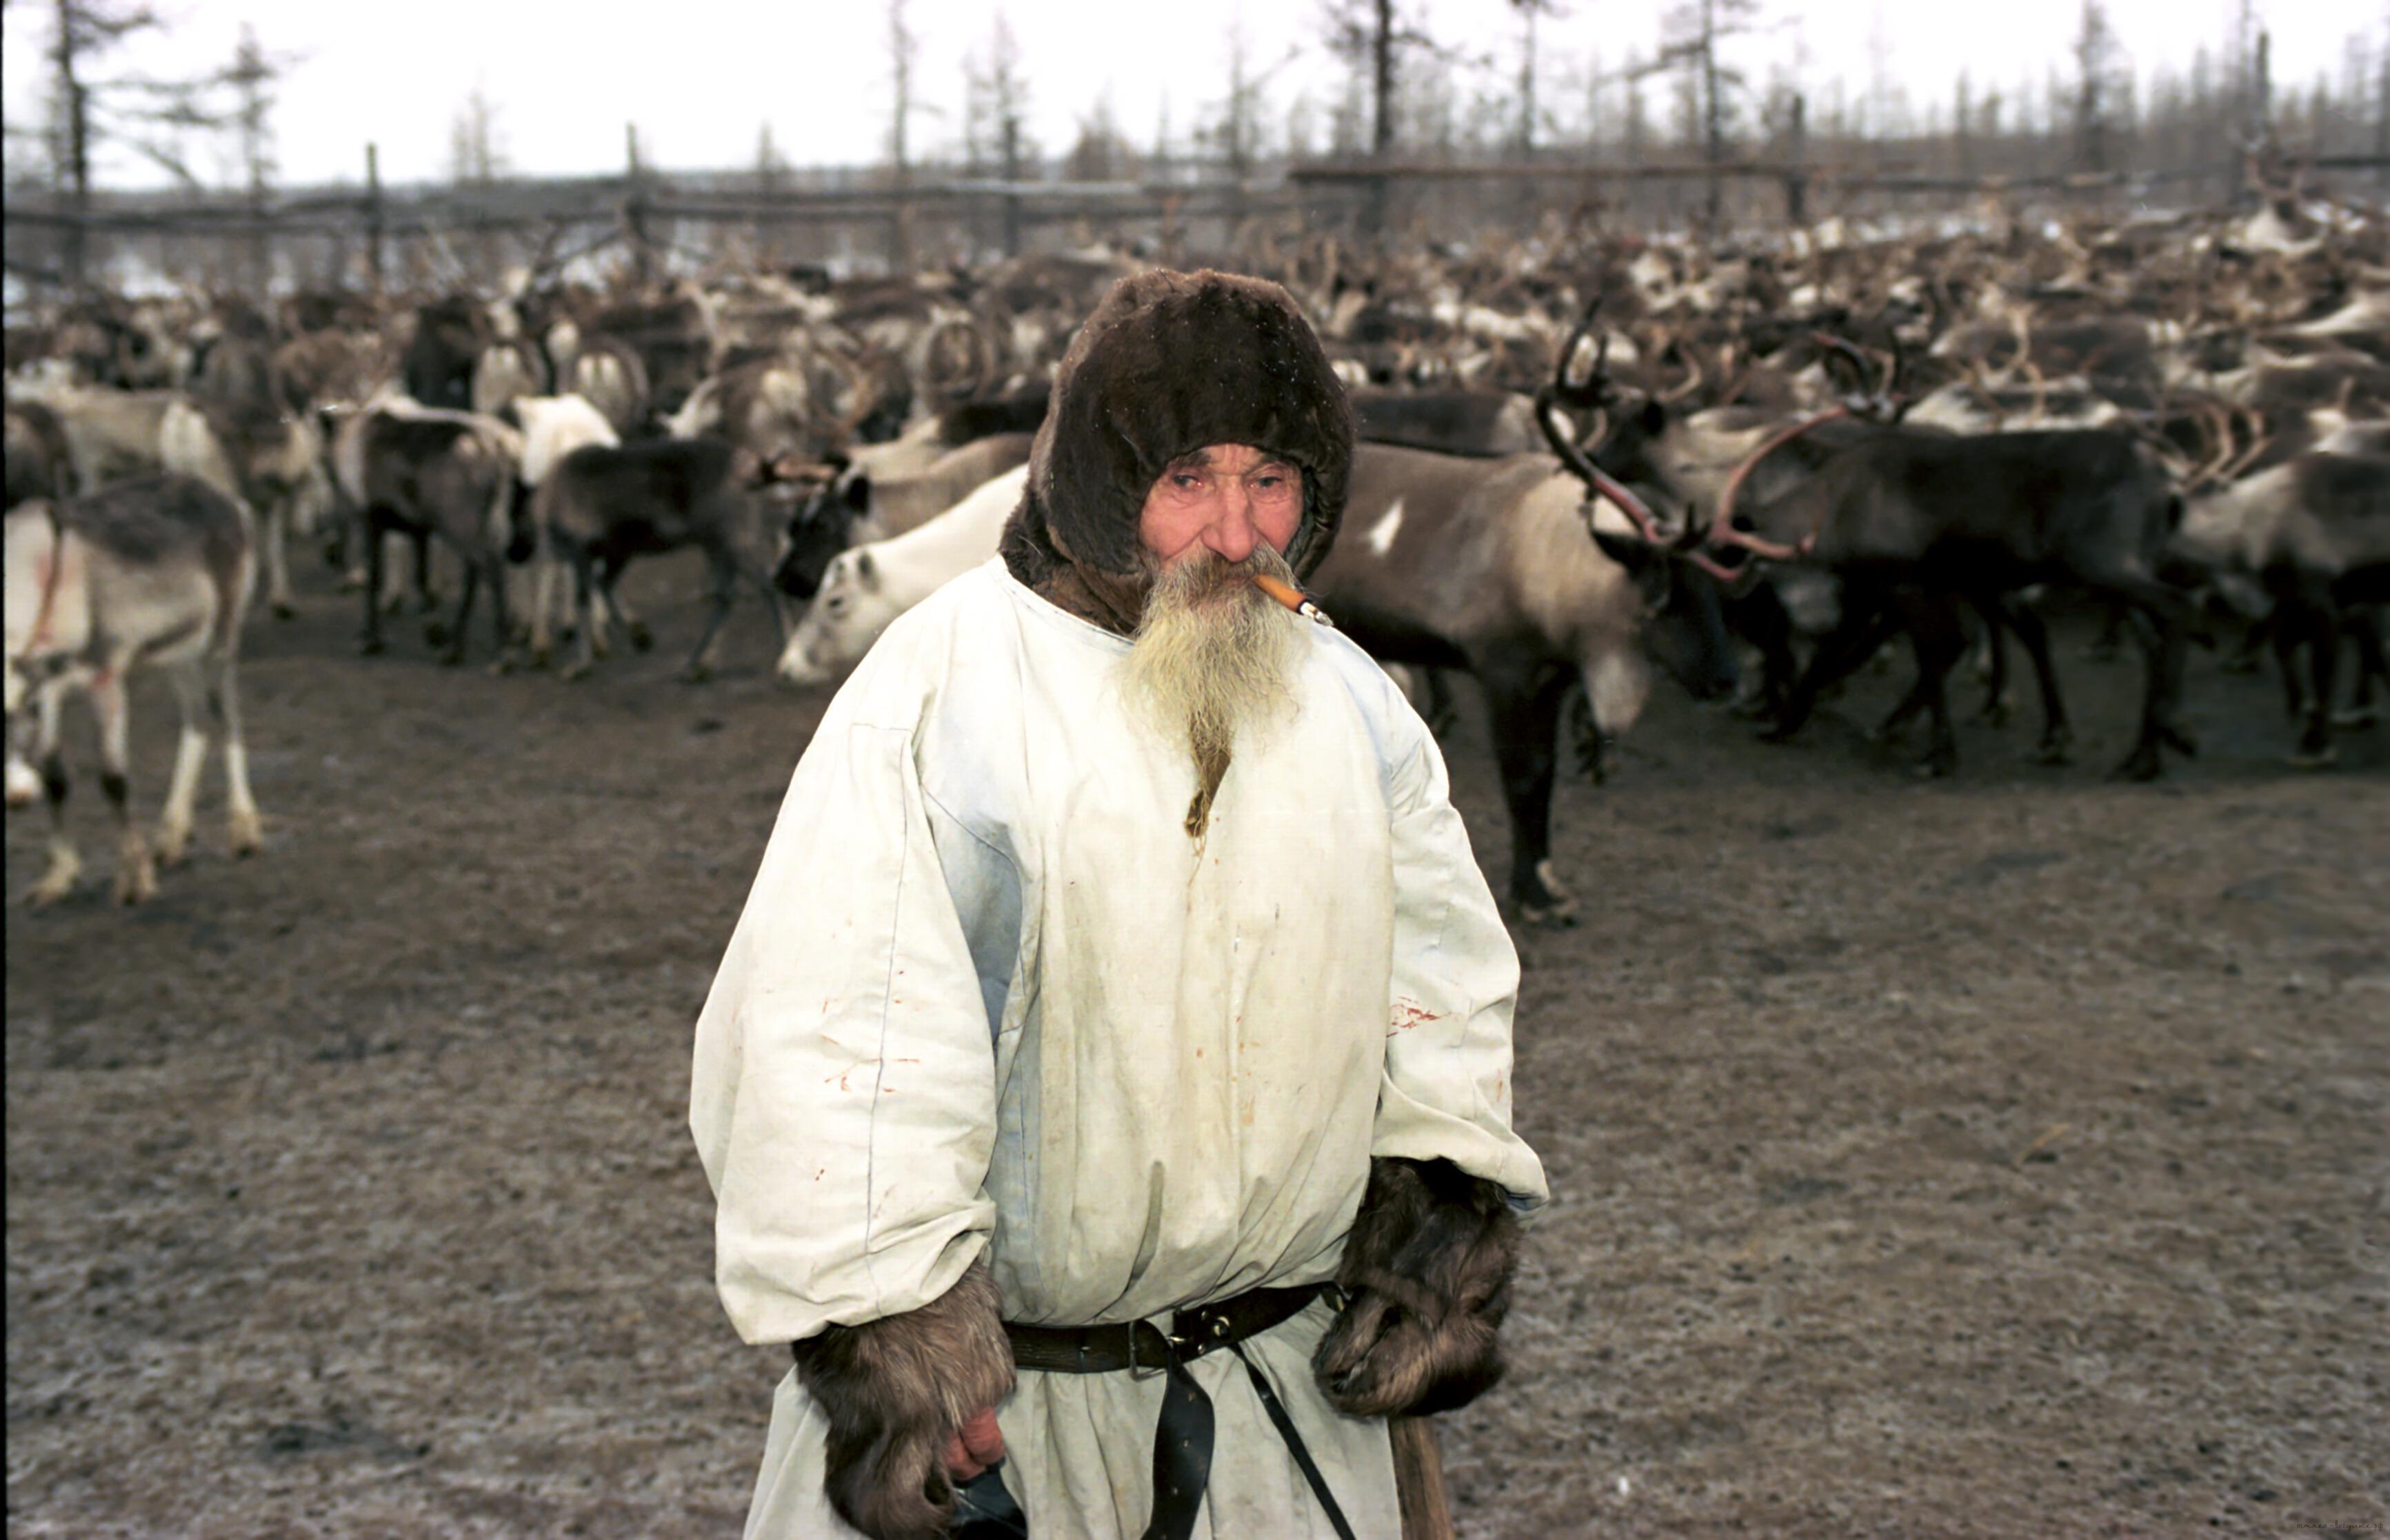 калмыки в обмен на русский товар предлагали рогатый и вьючный скот, свои сласти и китайский табак